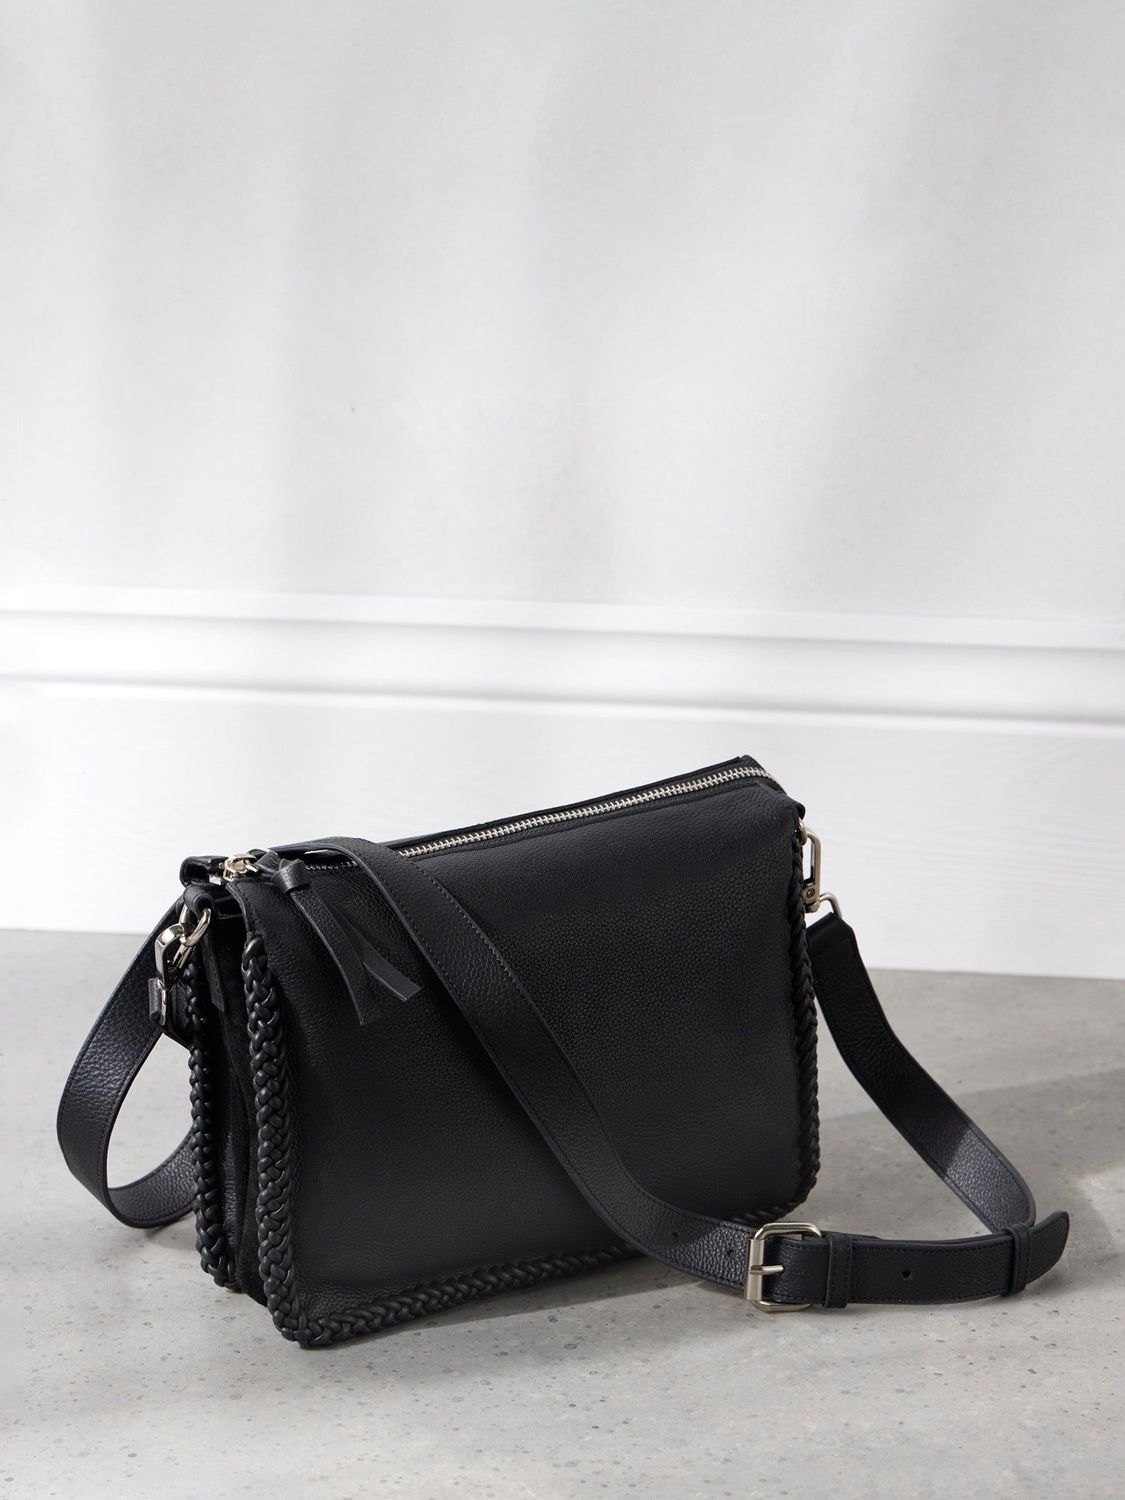 Mint Velvet Leather Cross Body Bag, Black at John Lewis & Partners